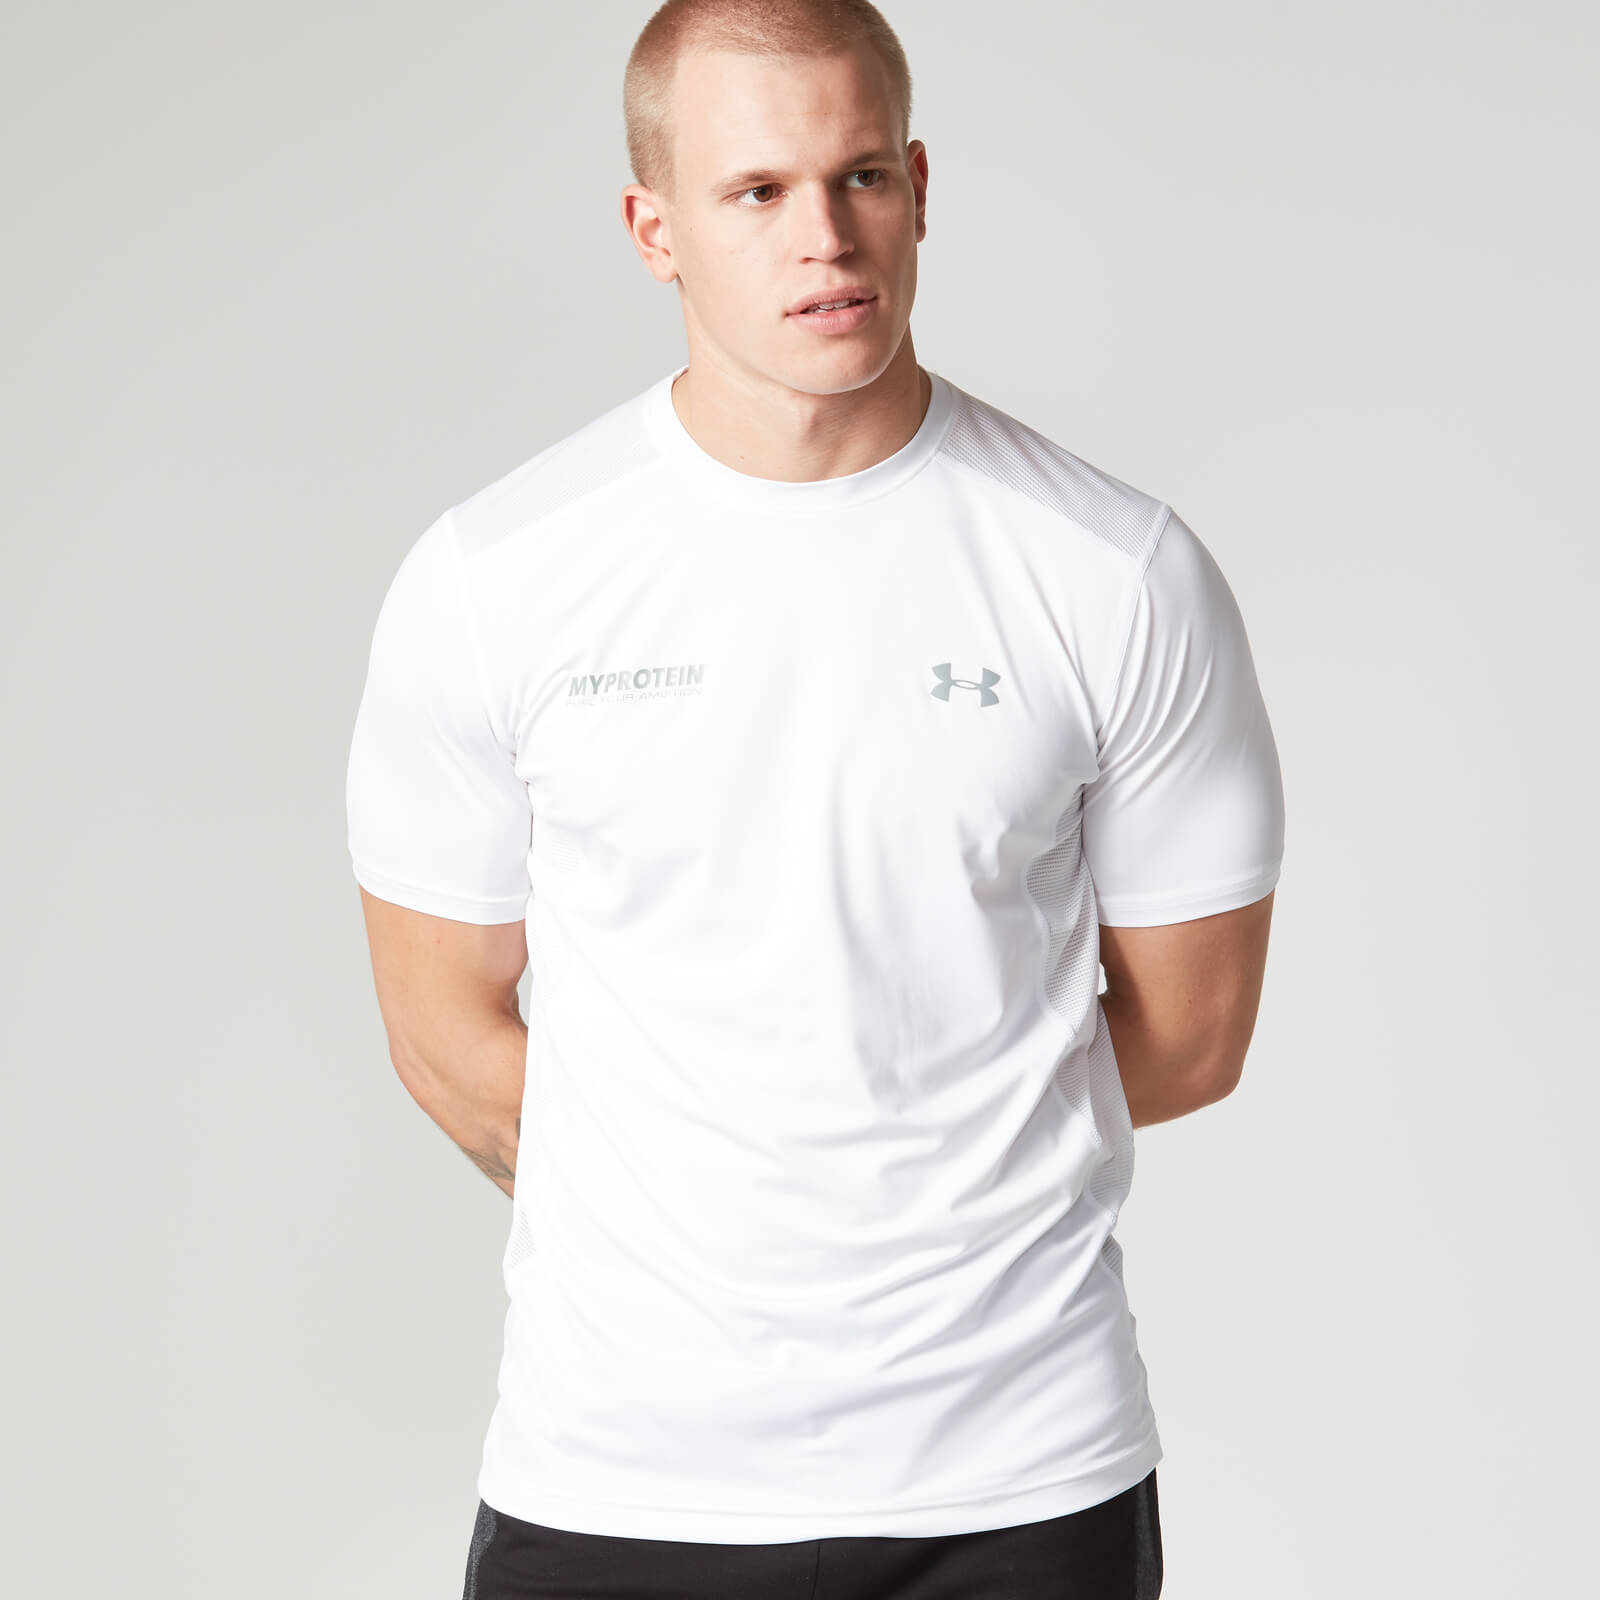 Under Armour Men's Tech T-Shirt - White/Black